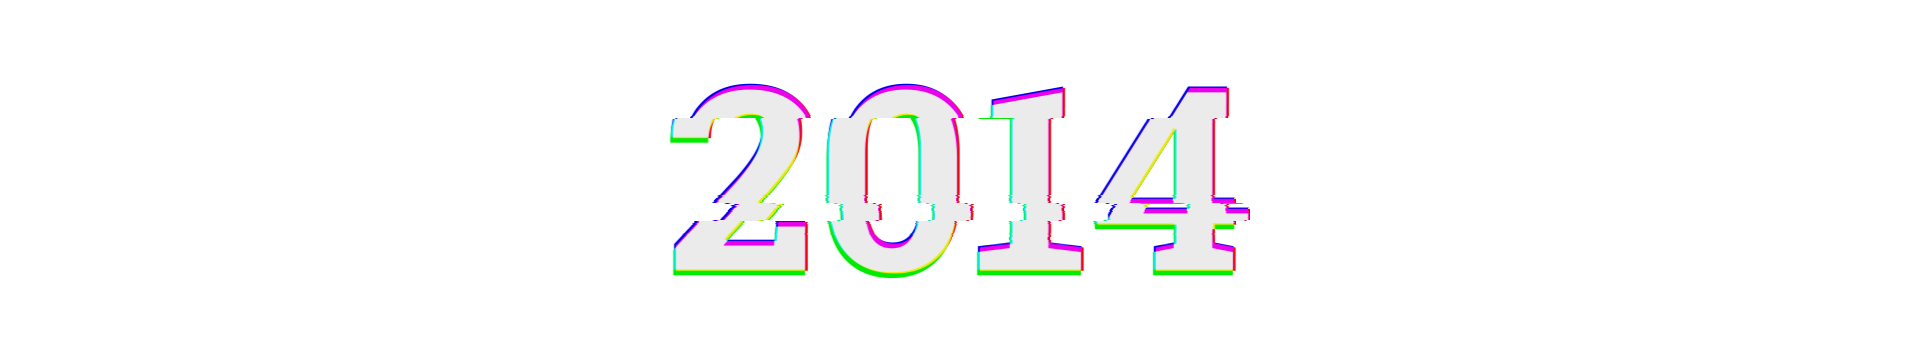 2014-header